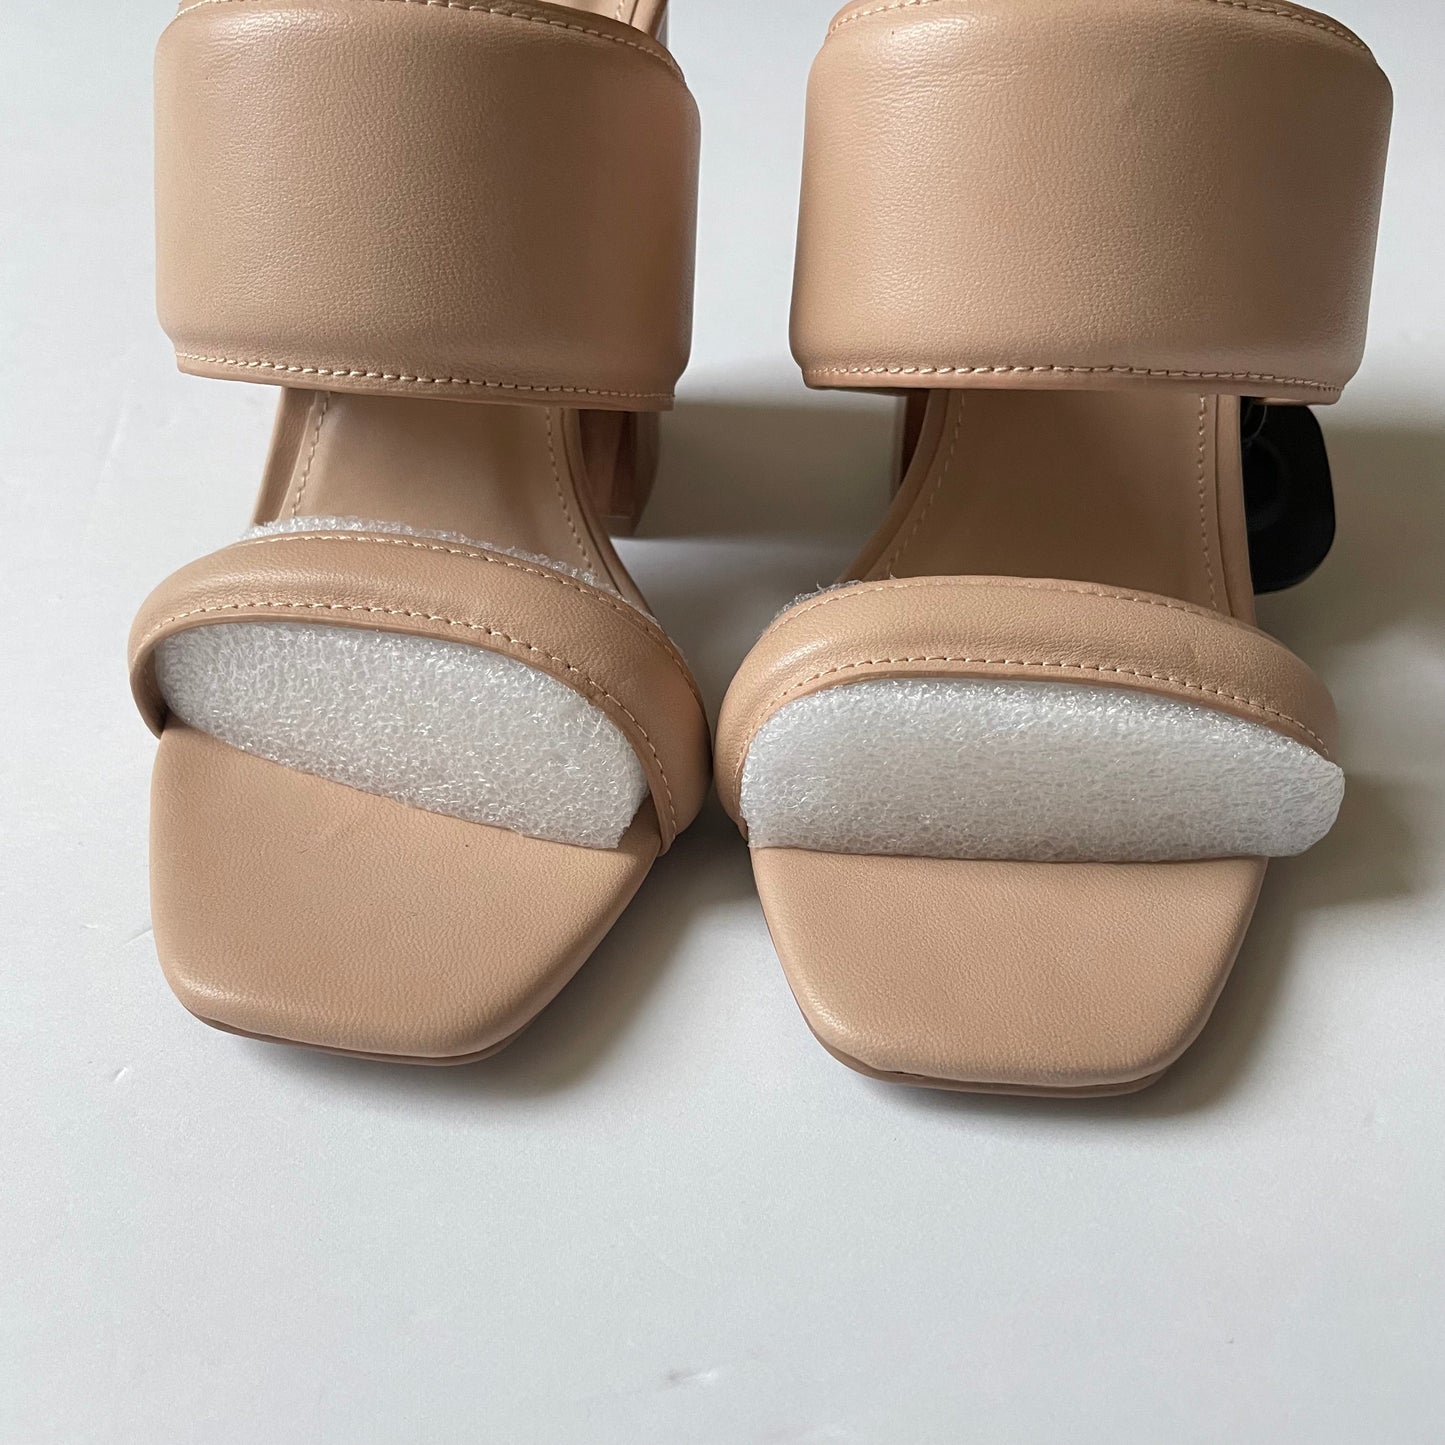 Tan Shoes Heels Block Qupid, Size 6.5